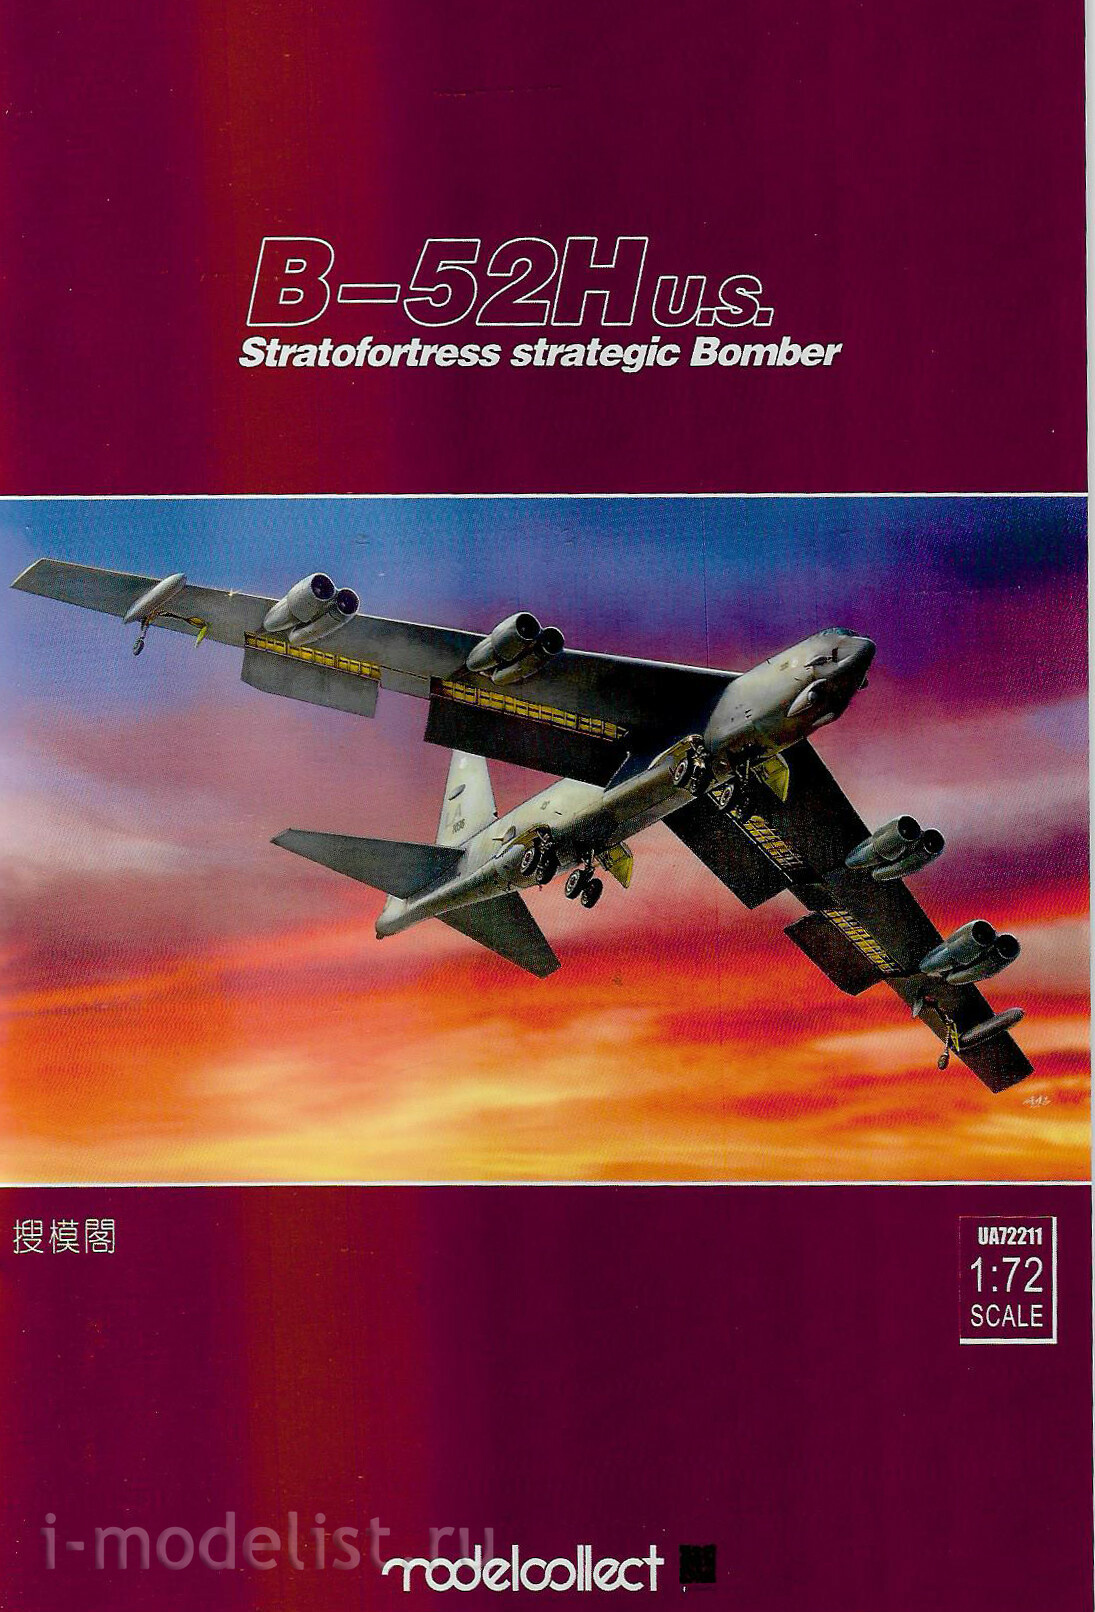 UA72211 Modelcollect 1/72 American Strategic bomber Stratofortress B-52H